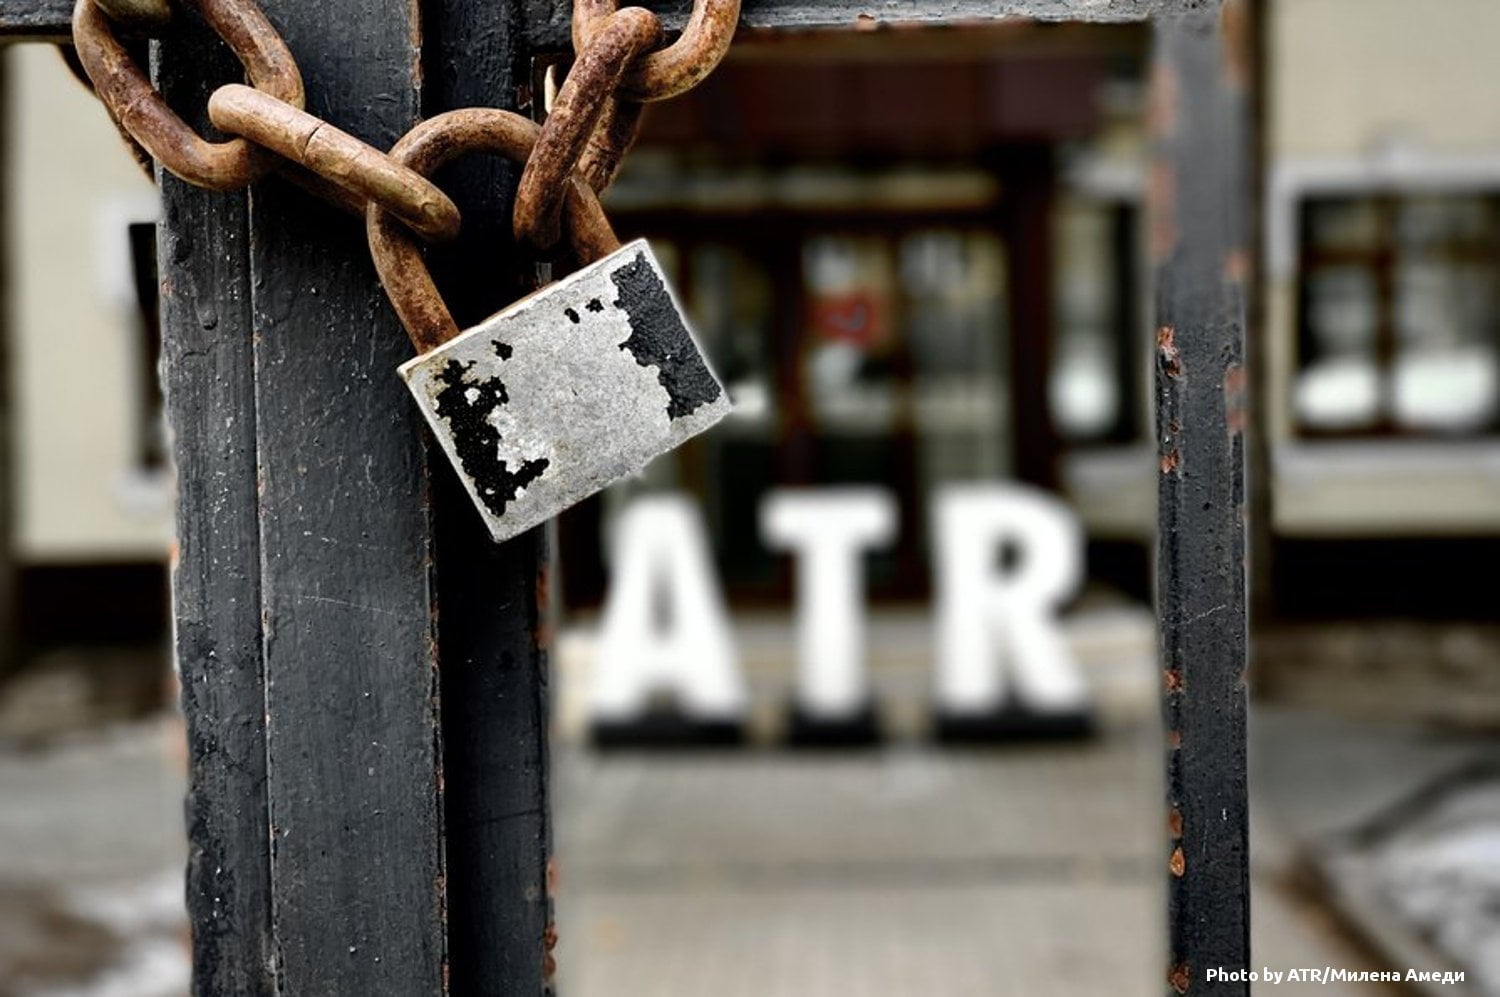 ATR припинив мовлення на окупований Крим через брак фінансування 2